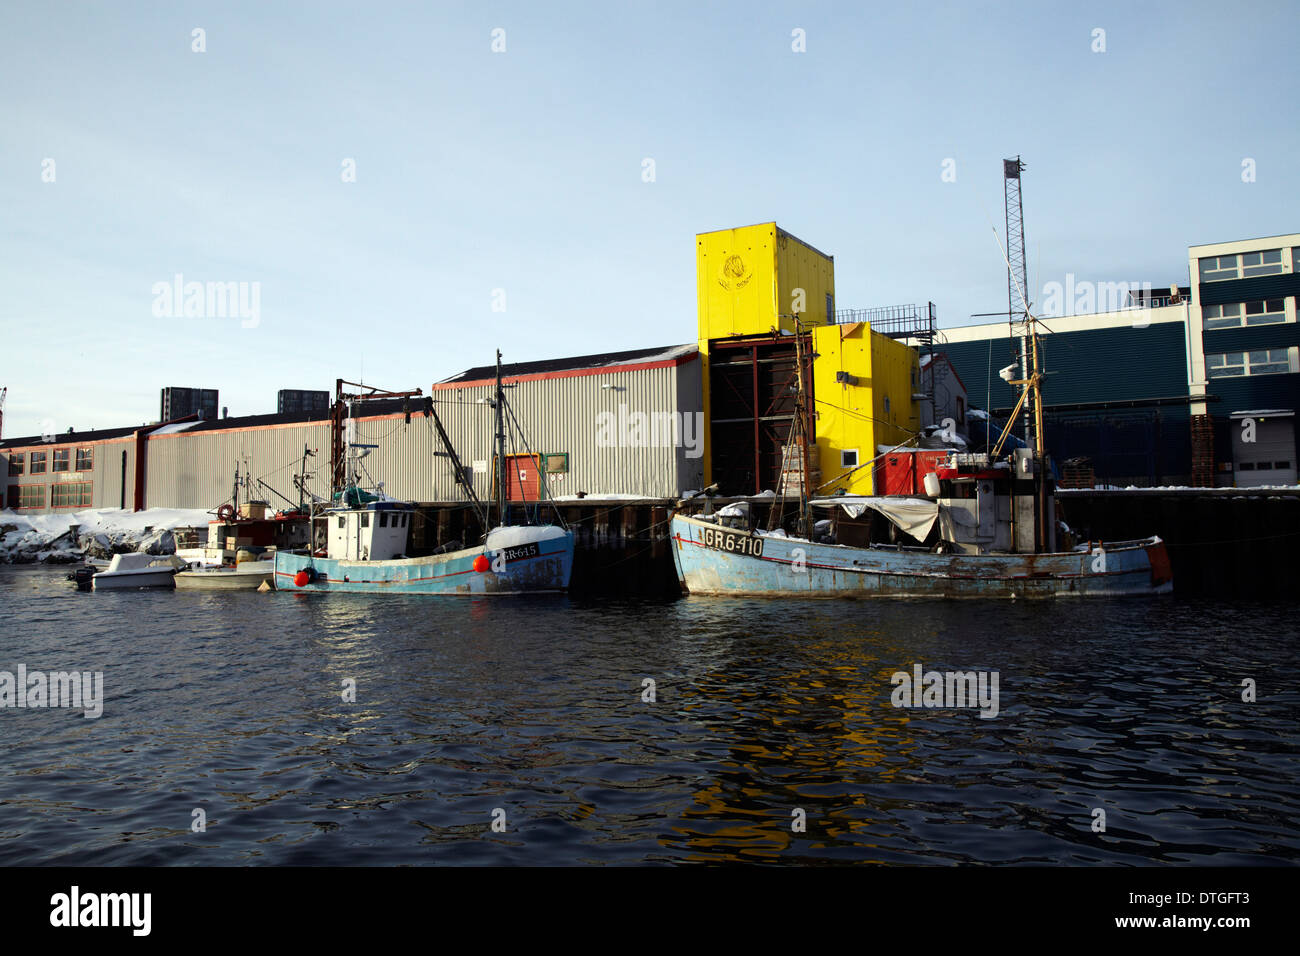 Bateaux de pêche au port de la ville de Nuuk, Groenland Banque D'Images